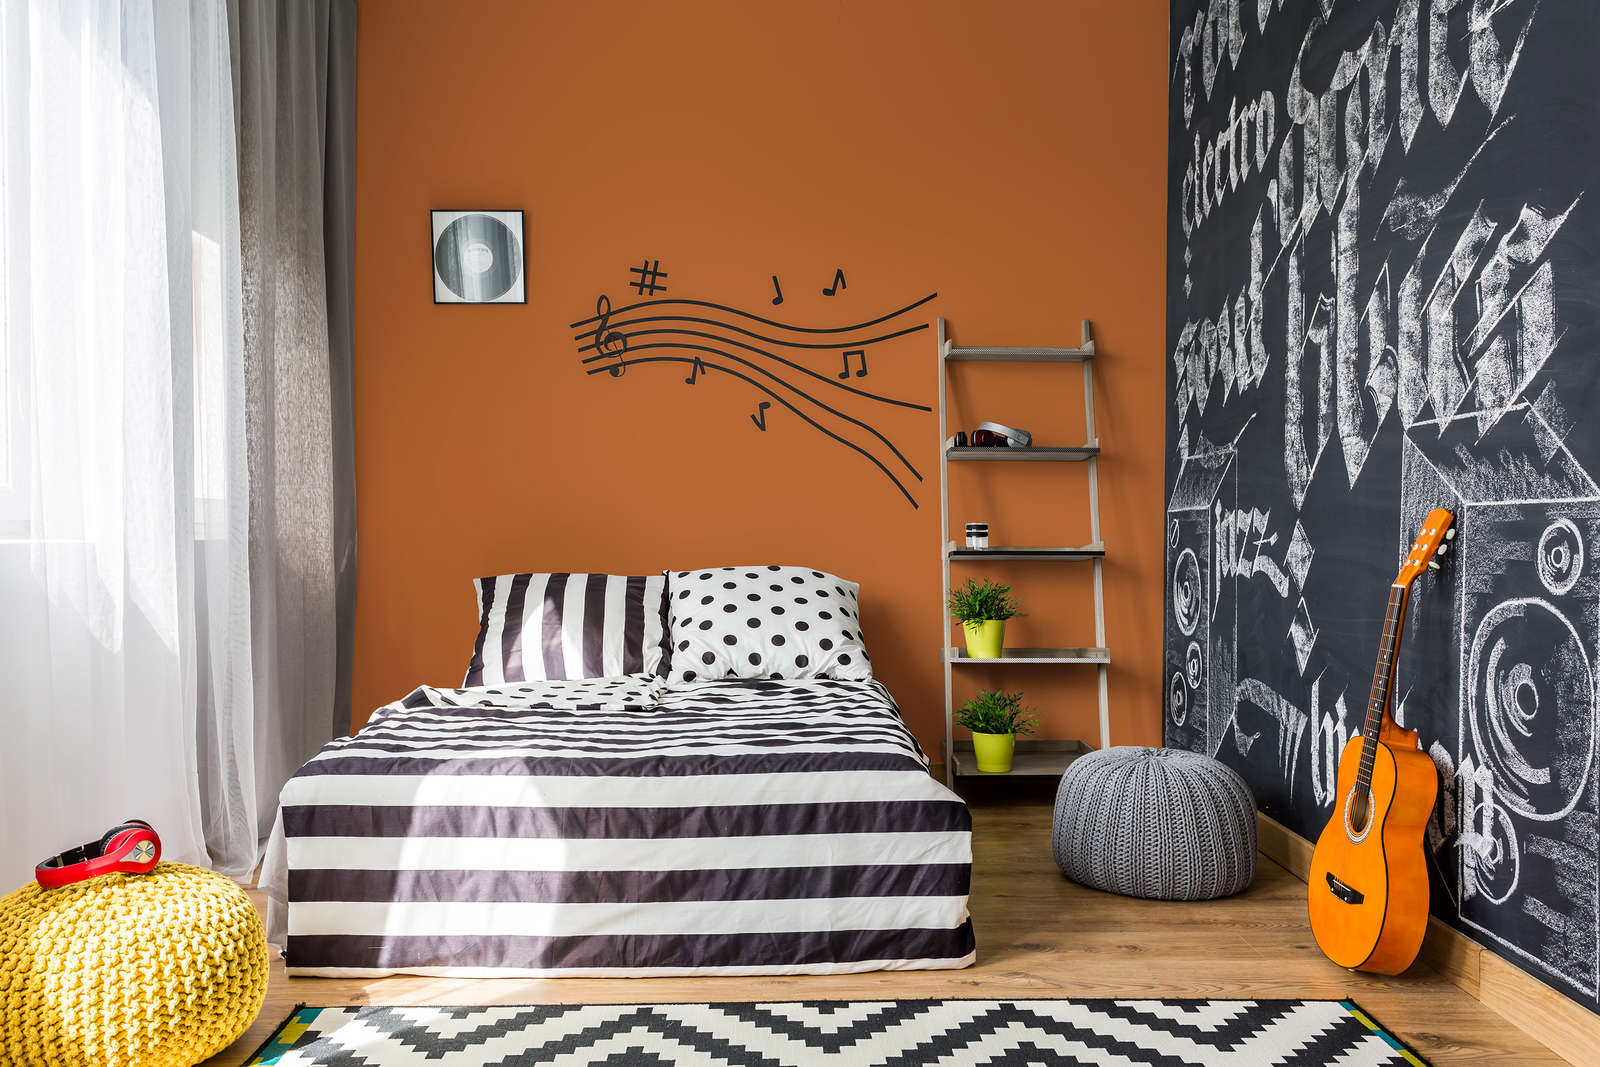             Pittura murale Premium Arancione caldo »Pretty Peach« NW903 – 2,5 litri
        